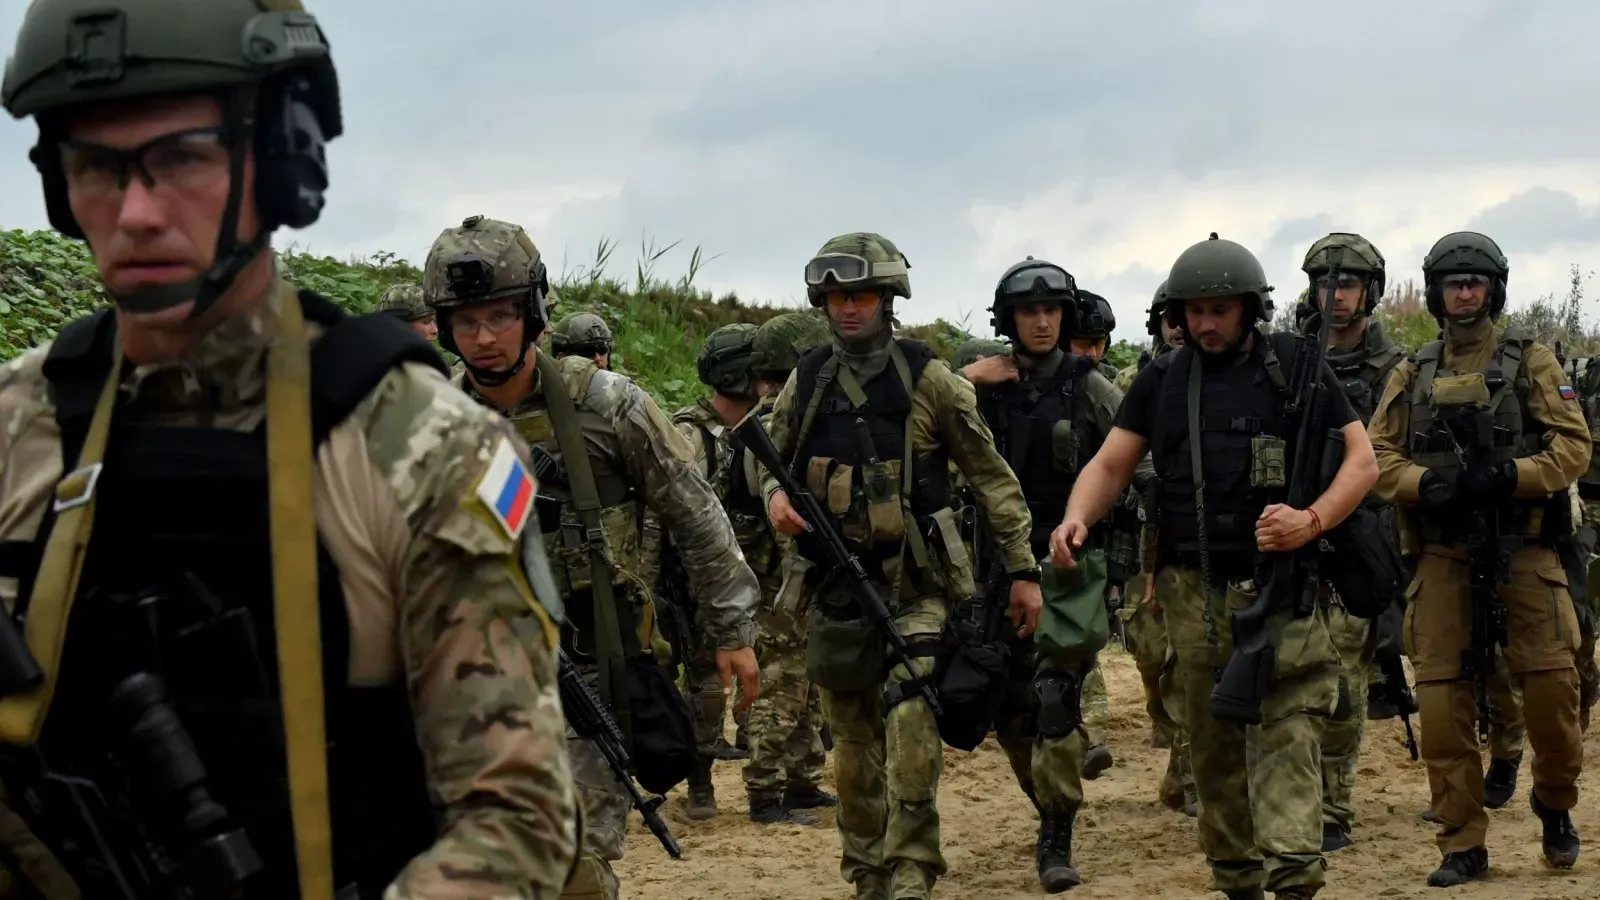 Tropas rusas avanzando en territorio ucraniano durante el conflicto.